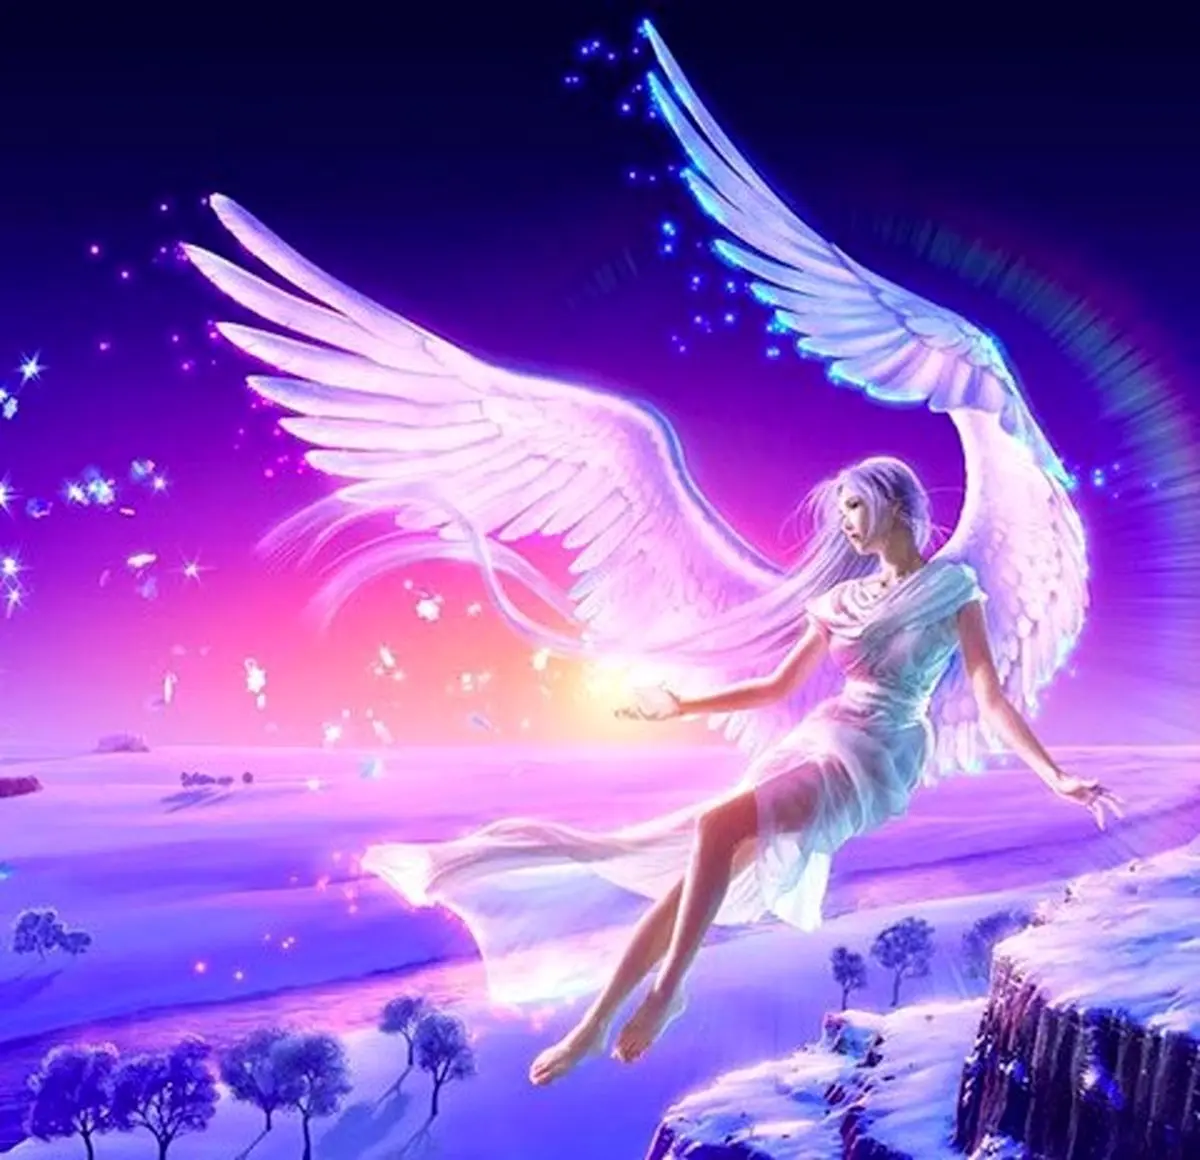 فال فرشتگان 14 شهریورماه  | فرشتگان برای شما چه پیام مثبتی دارند؟